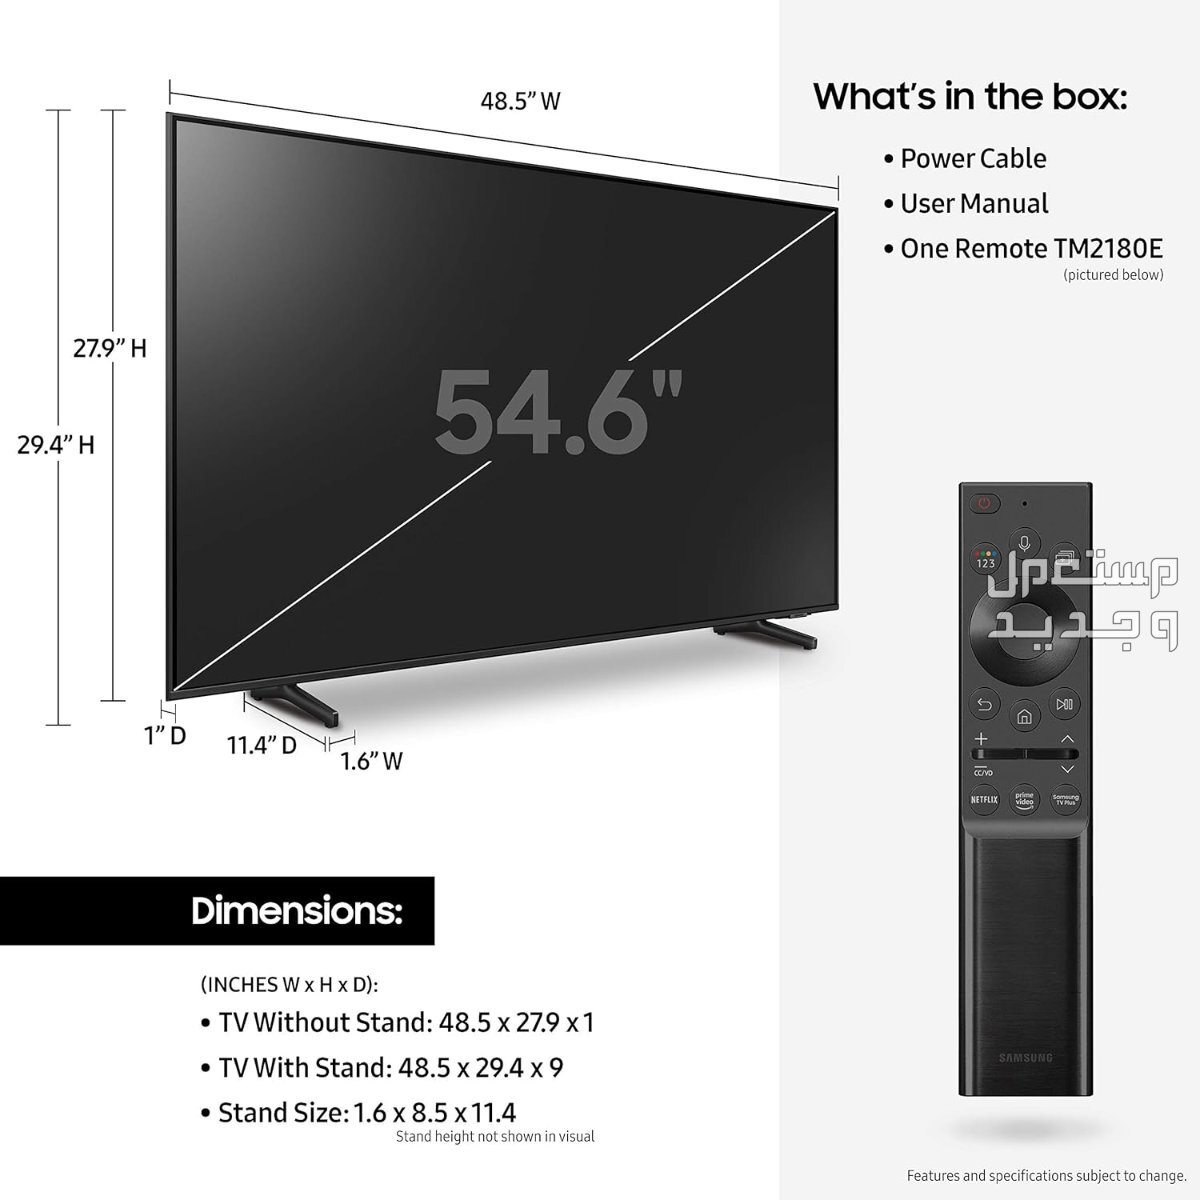 انواع تلفزيون 55 بوصة بالمواصفات والصور والأسعار في قطر تلفزيون 55 بوصة ماركة سامسونج موديل QA55Q60ABUXUM